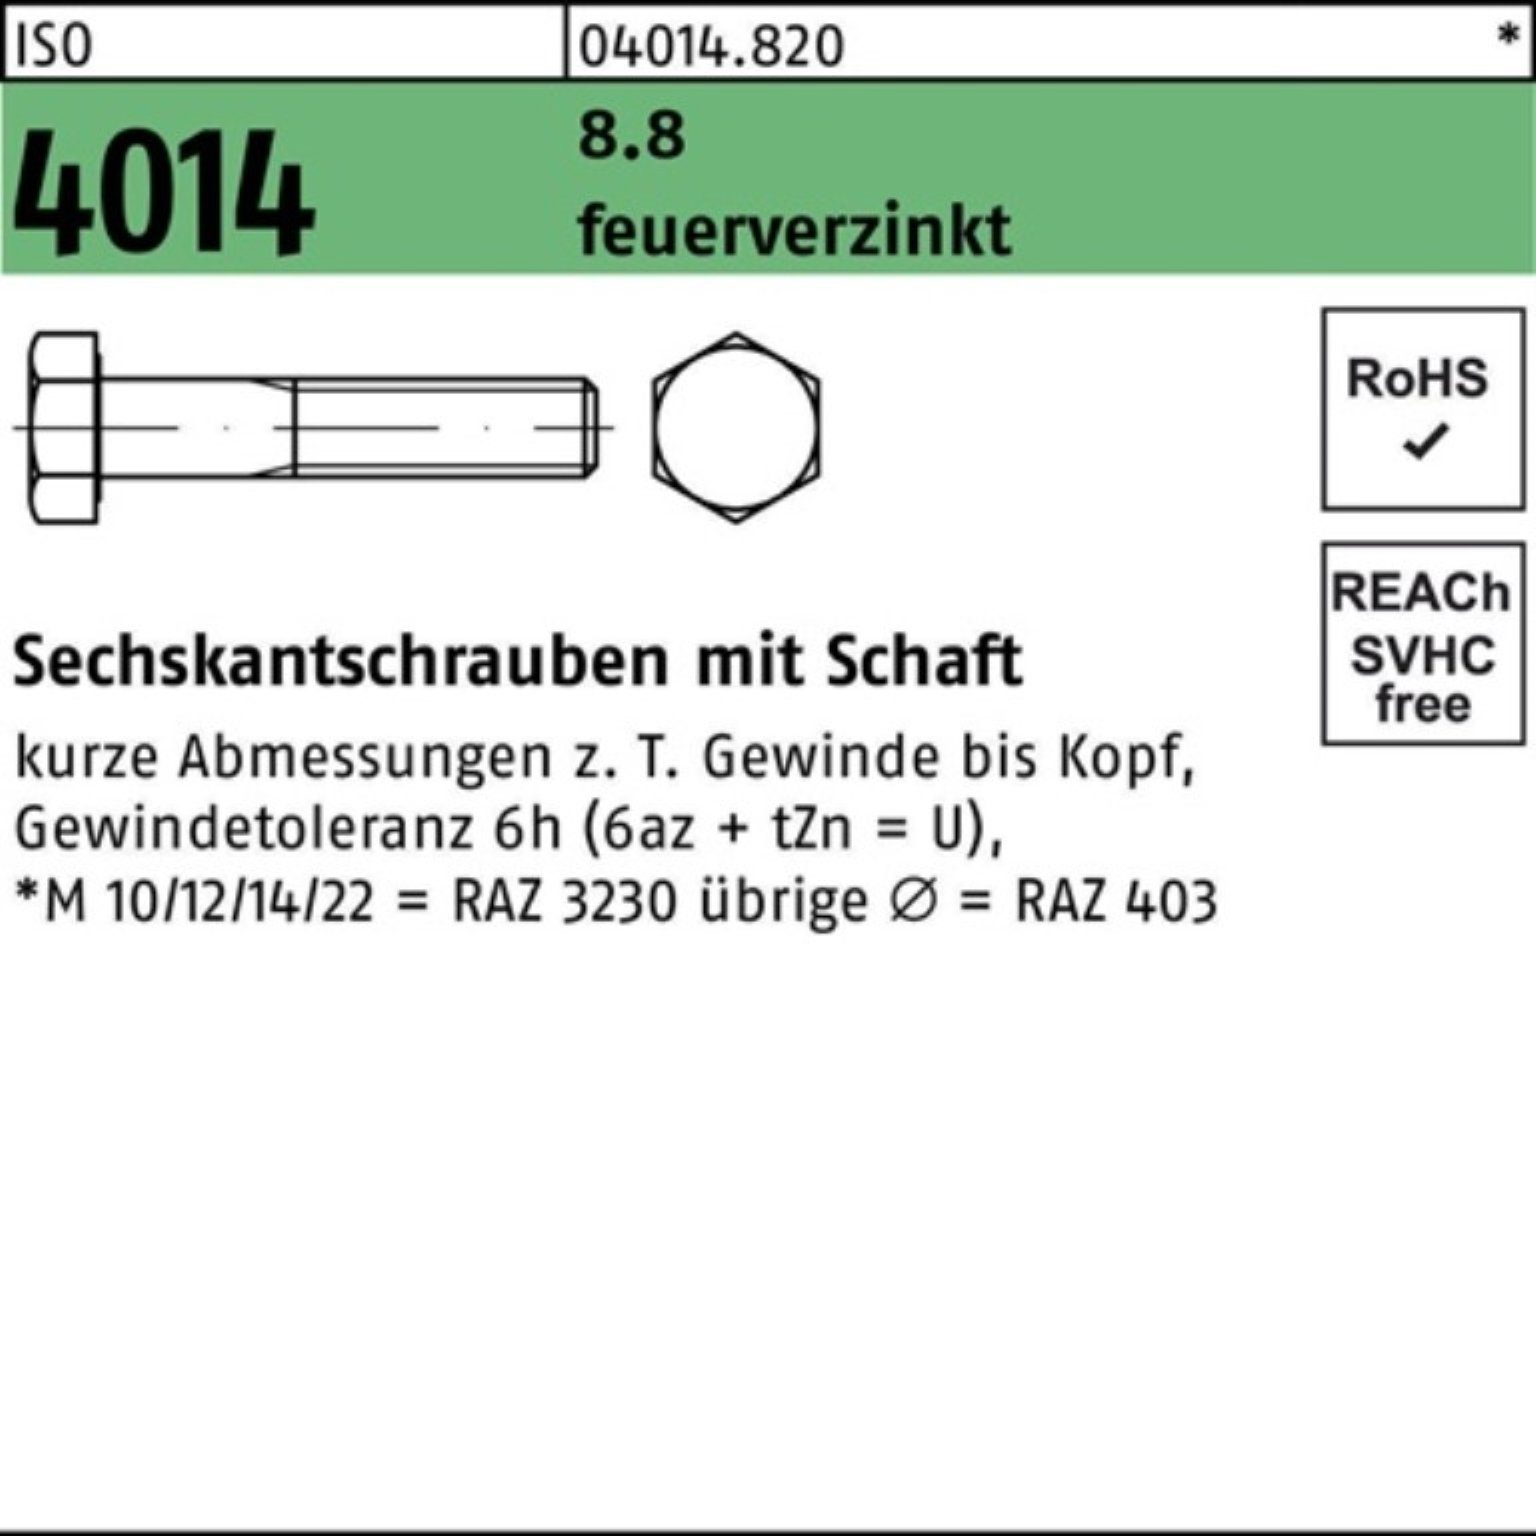 Bufab Sechskantschraube 100er Pack Sechskantschraube ISO 4014 Schaft M36x 190 8.8 feuerverz. 1